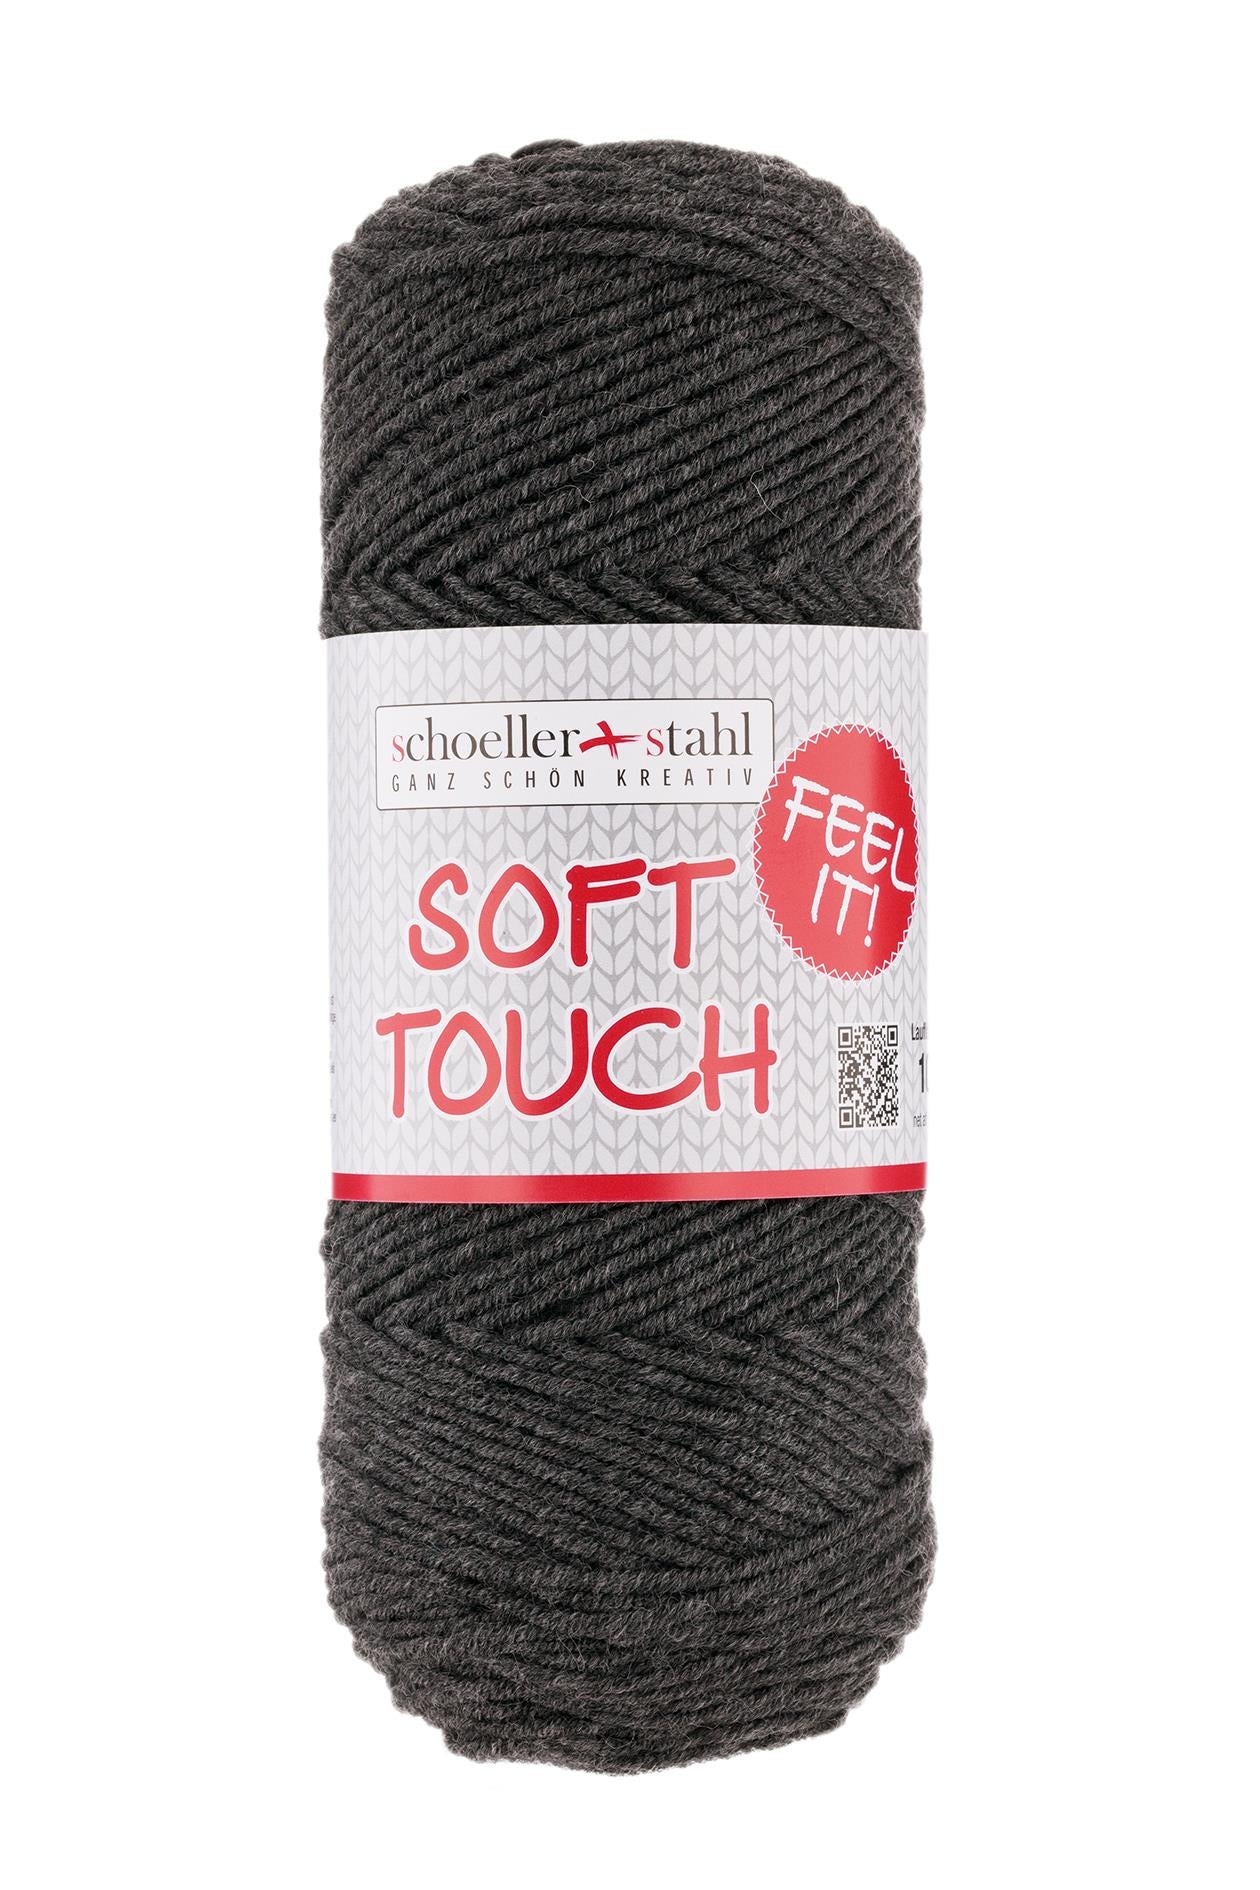 Soft touch 100g pullskin, 90283, Farbe 18, grau meliert